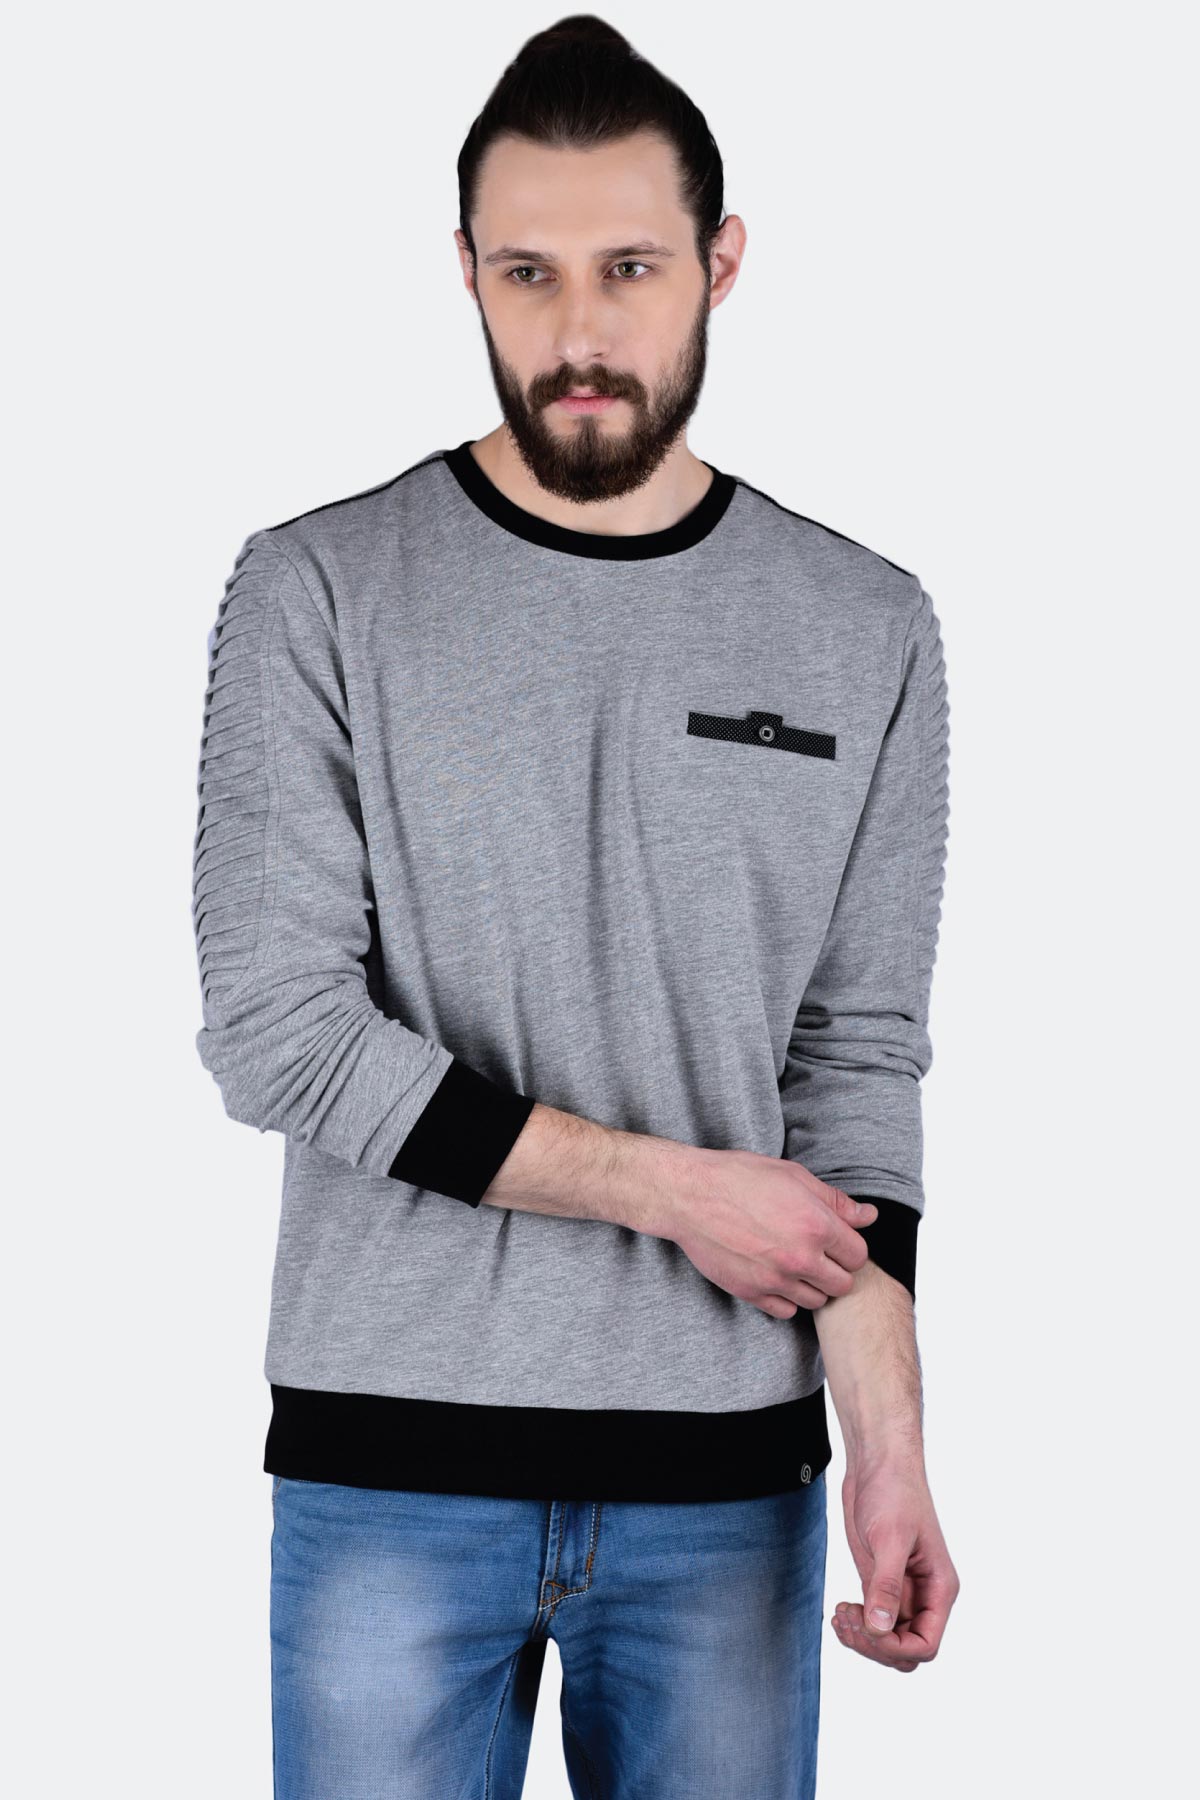 Pleated Sweatshirt - Quontico